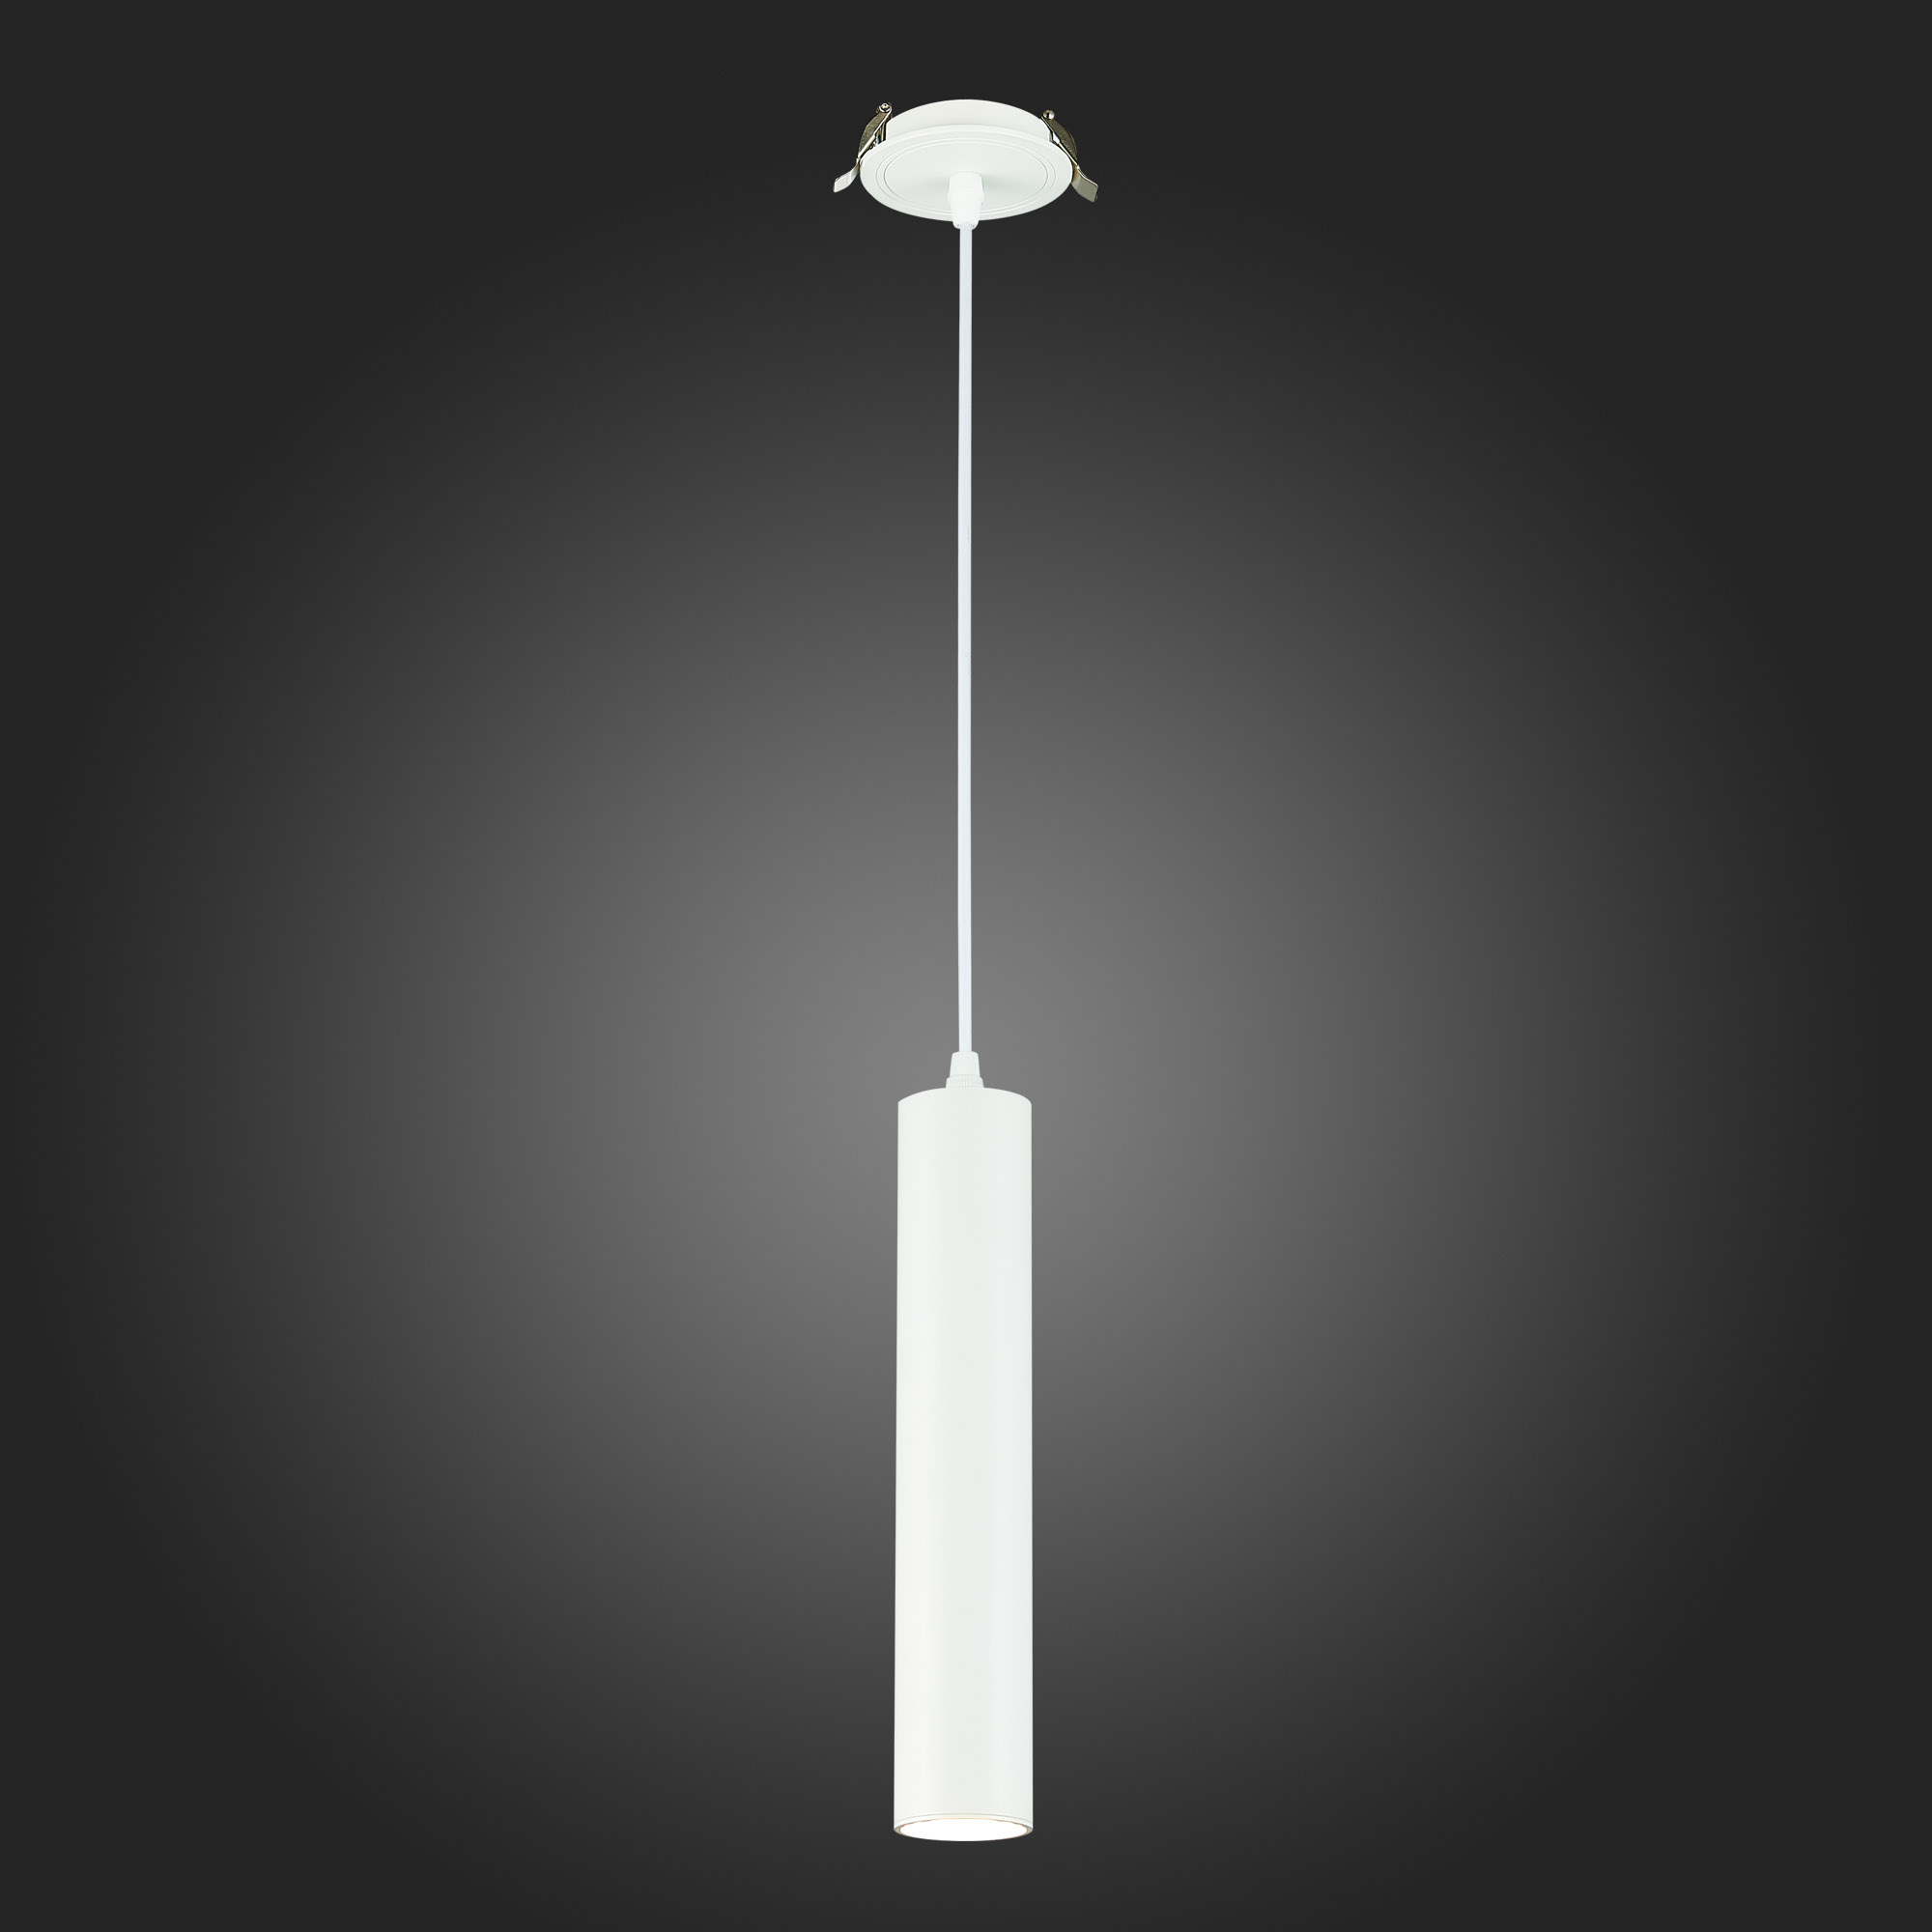 встраиваемый подвесной светильник st luce st151.508.01, артикул ST151.508.01